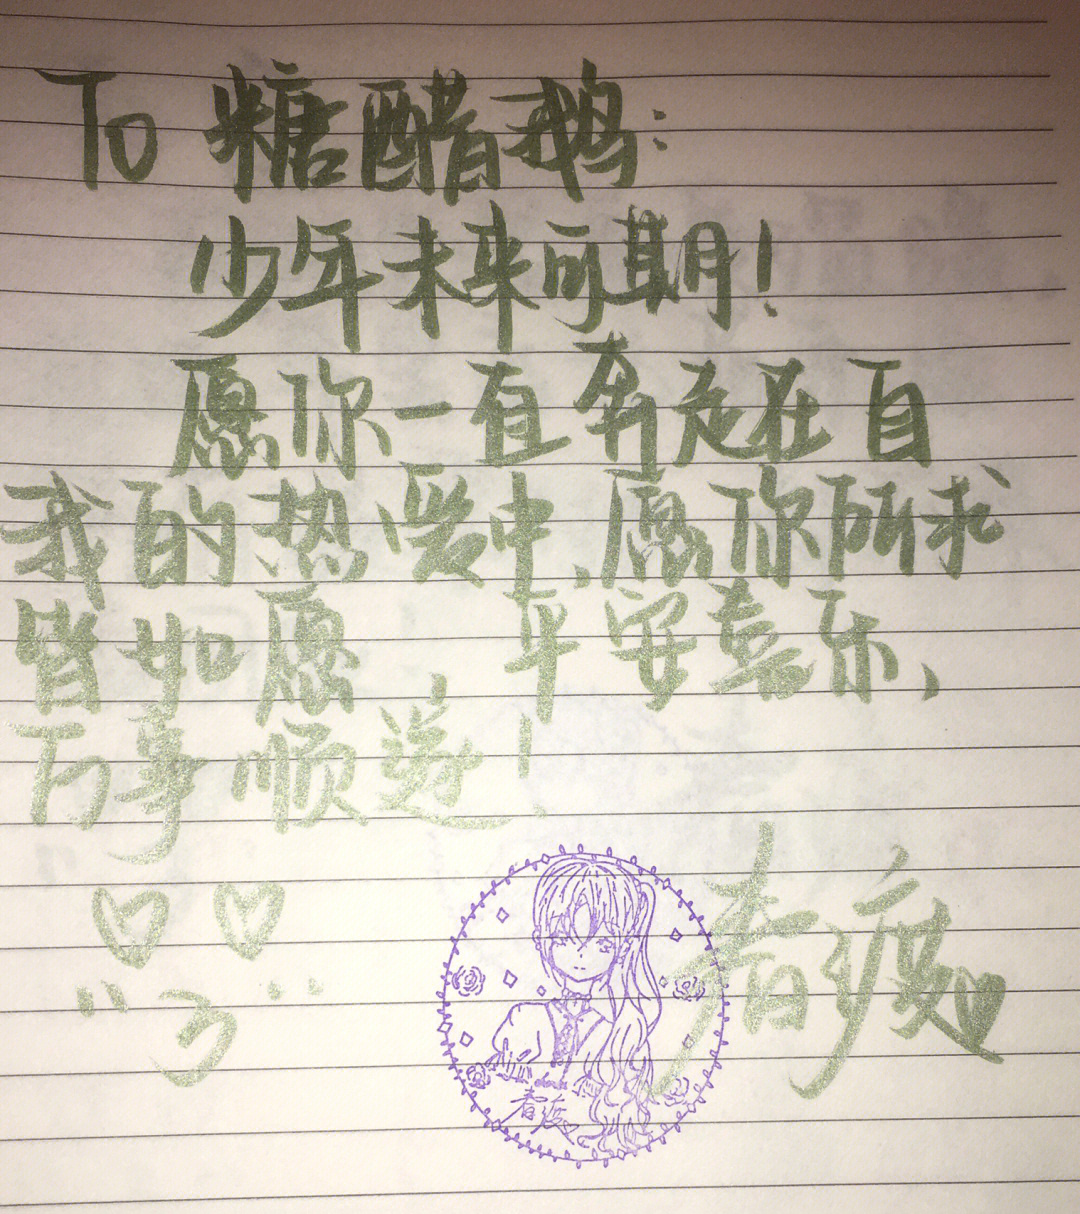 to写信格式中文图片